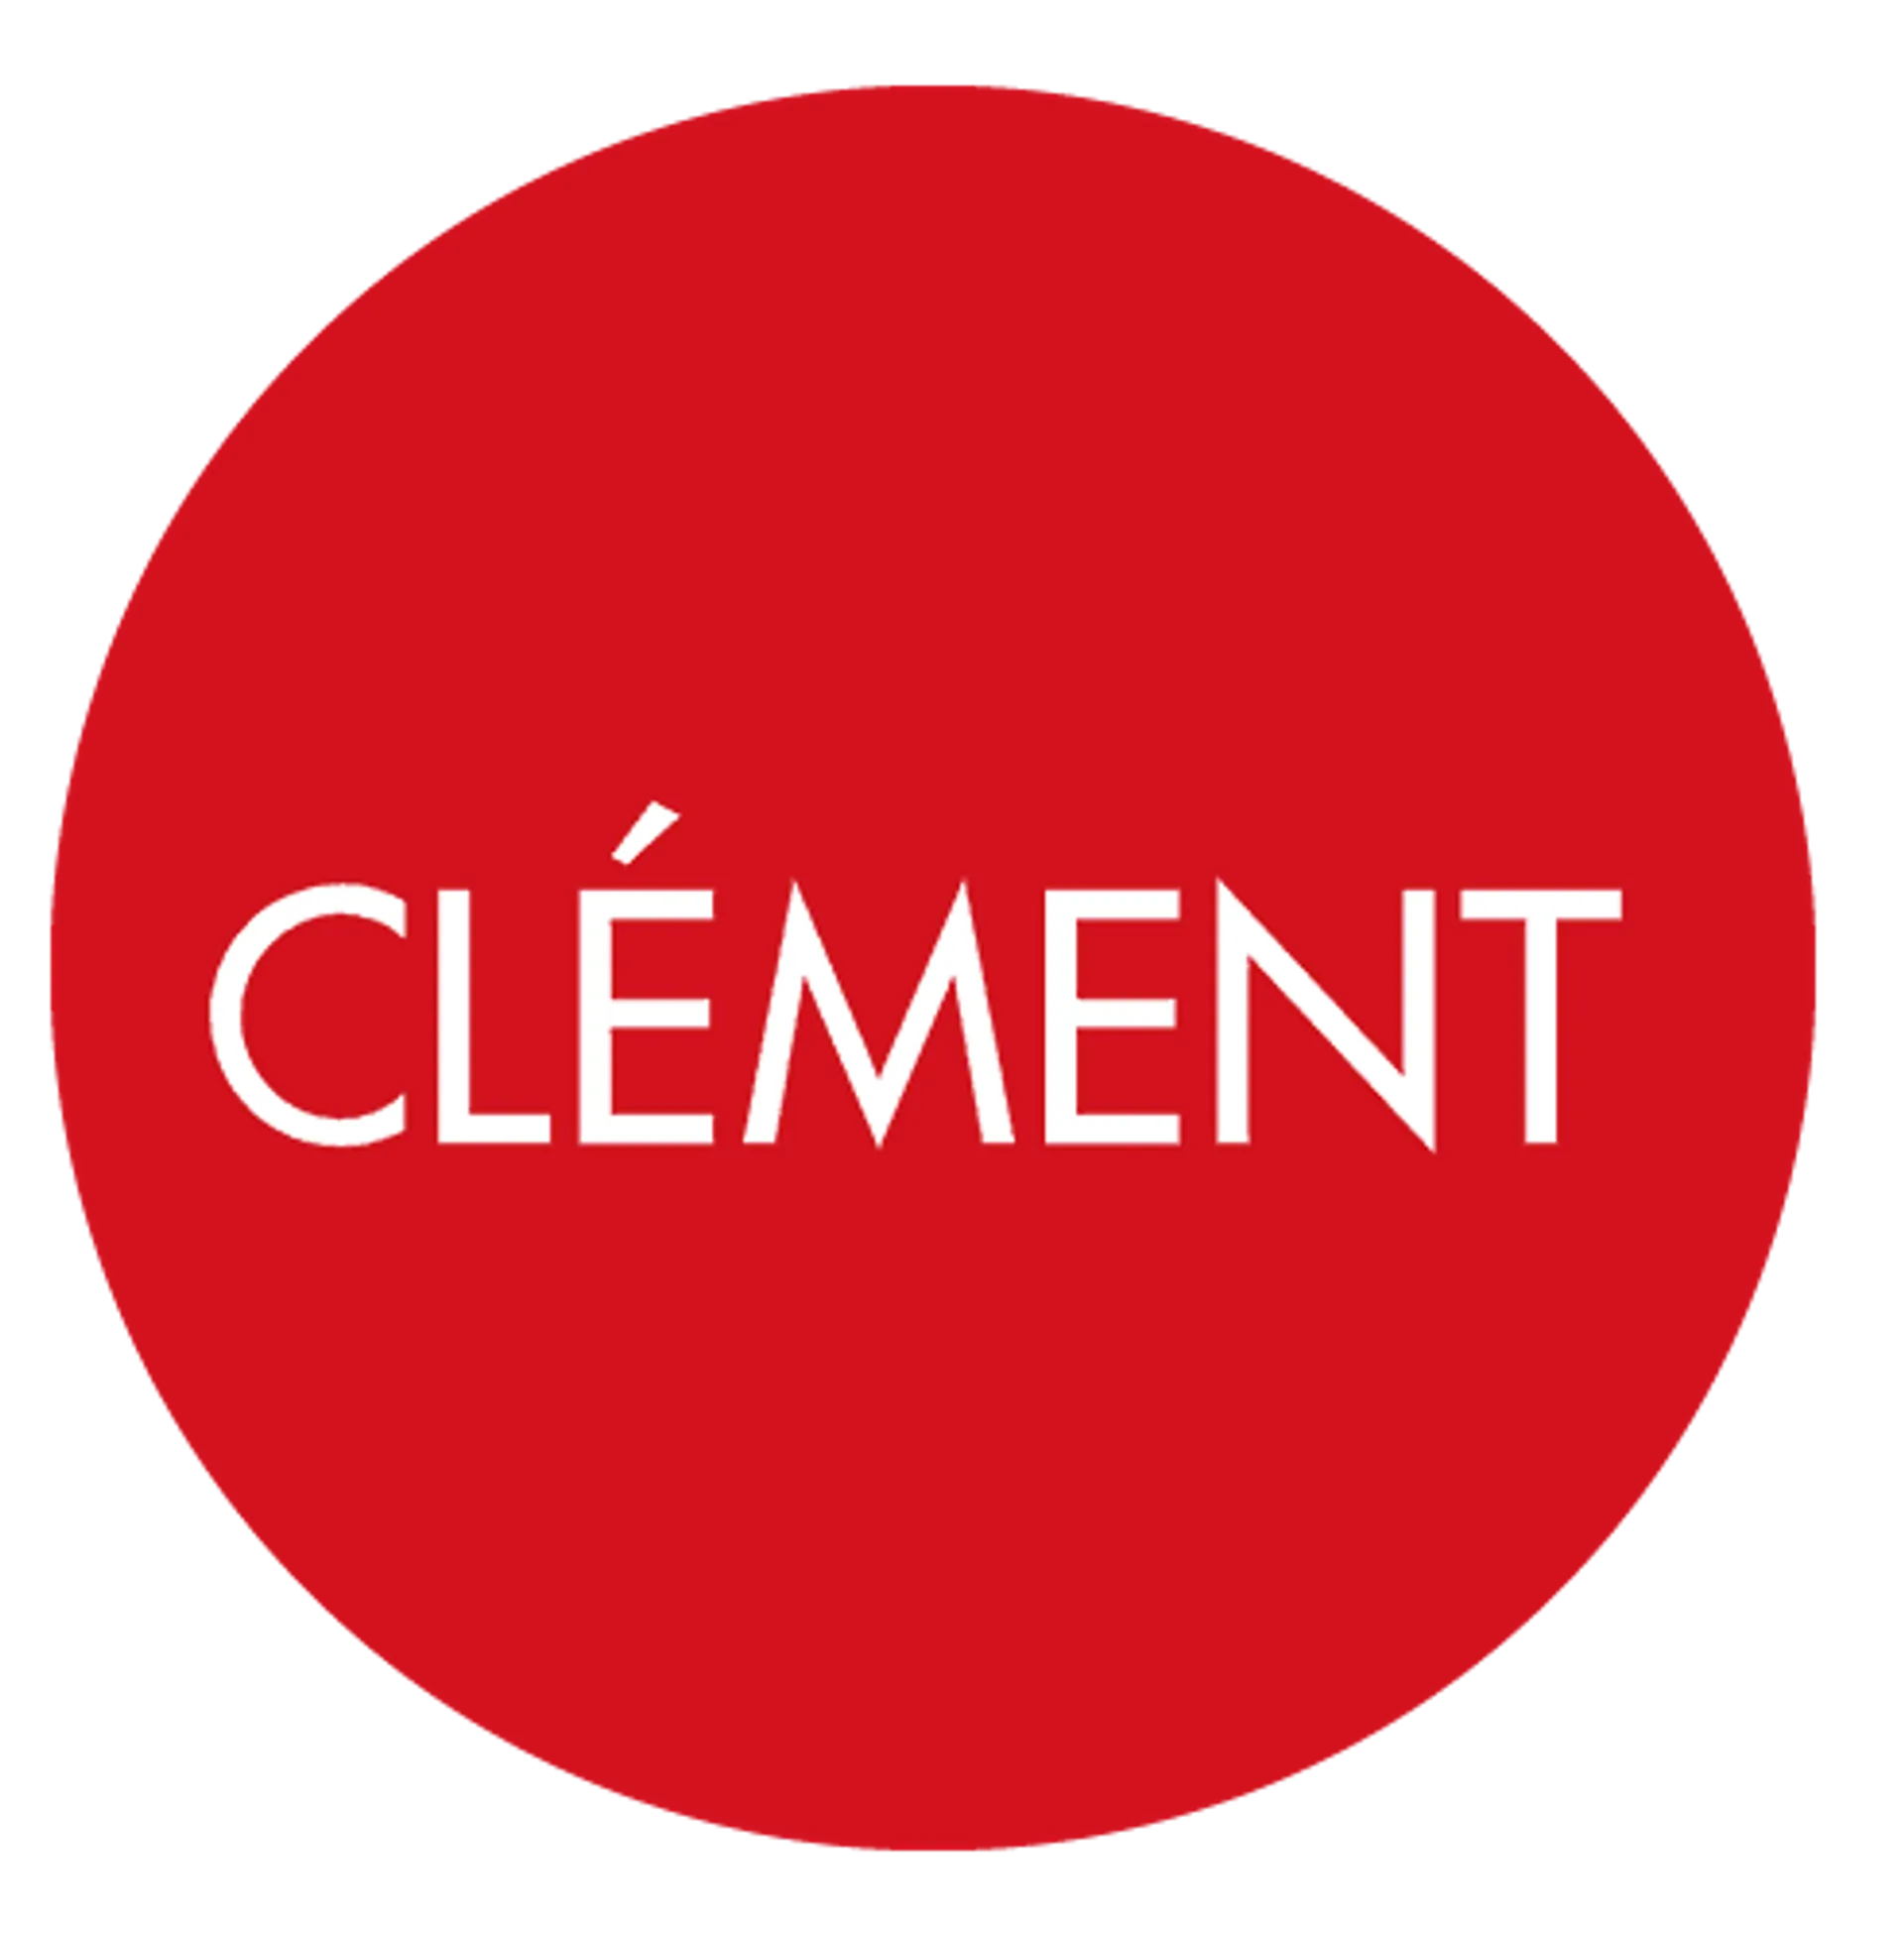 CLEMENT logo de circulaire